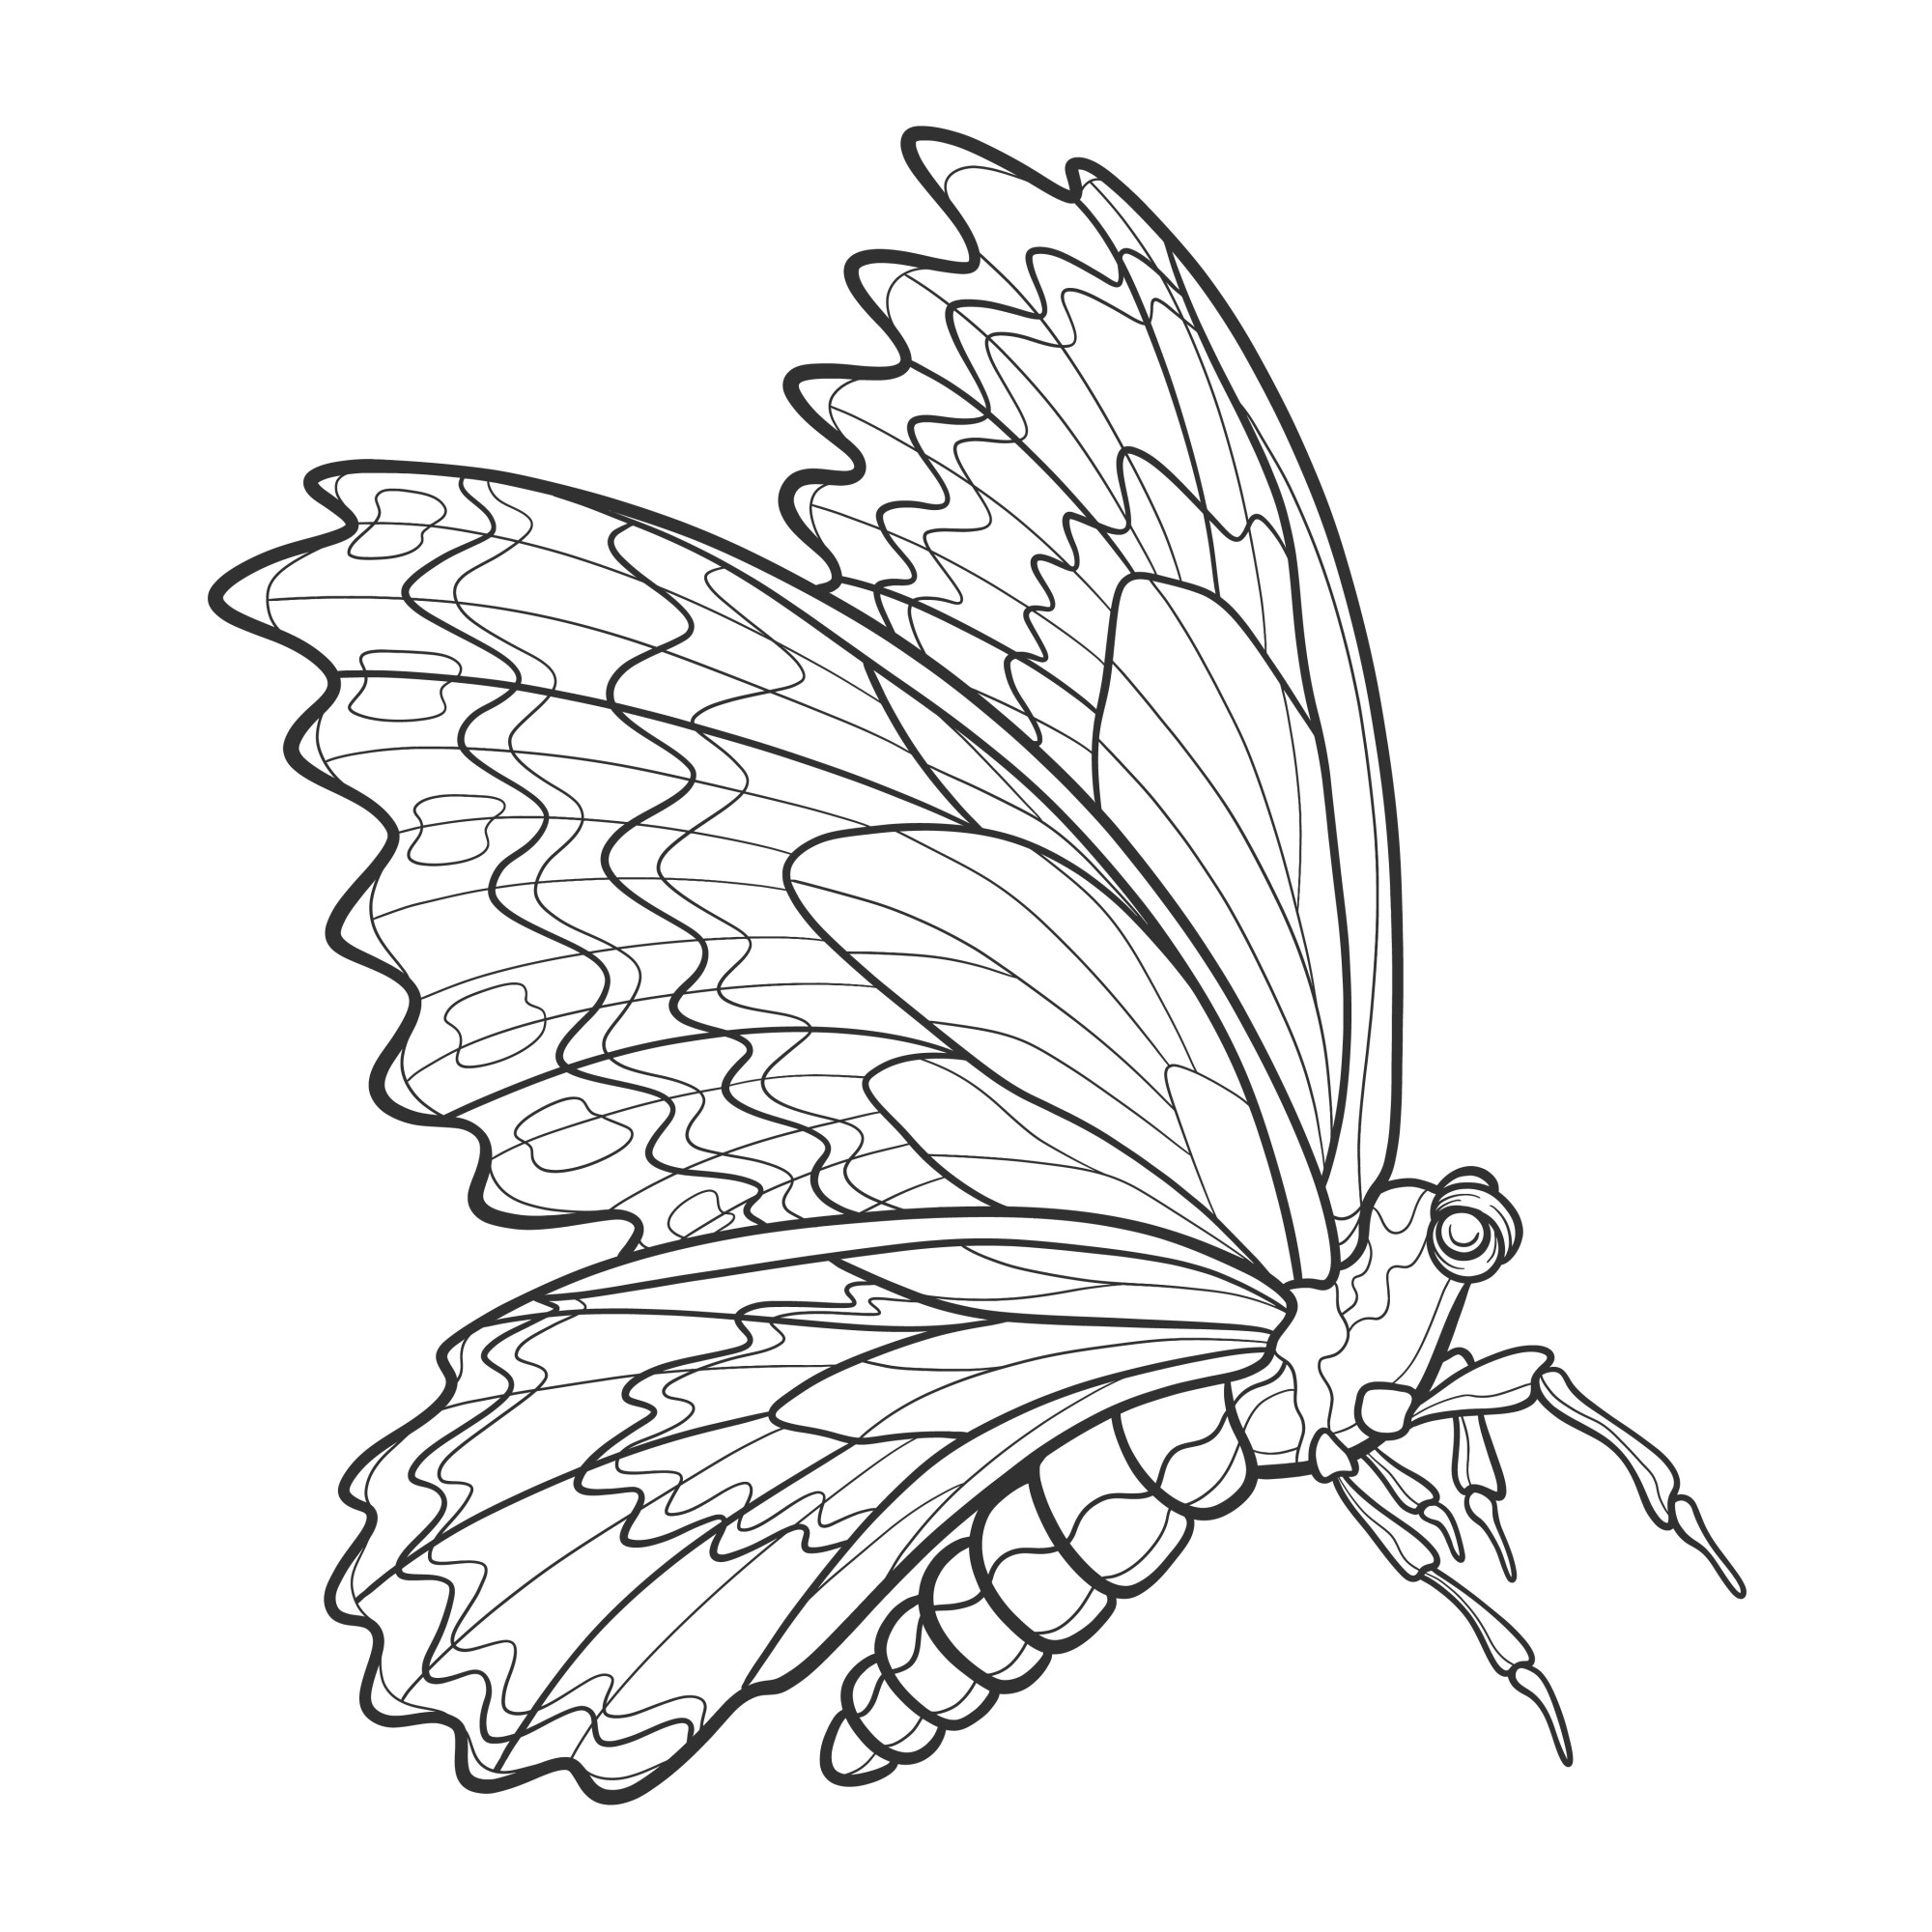 Раскраска для детей: реалистичная бабочка